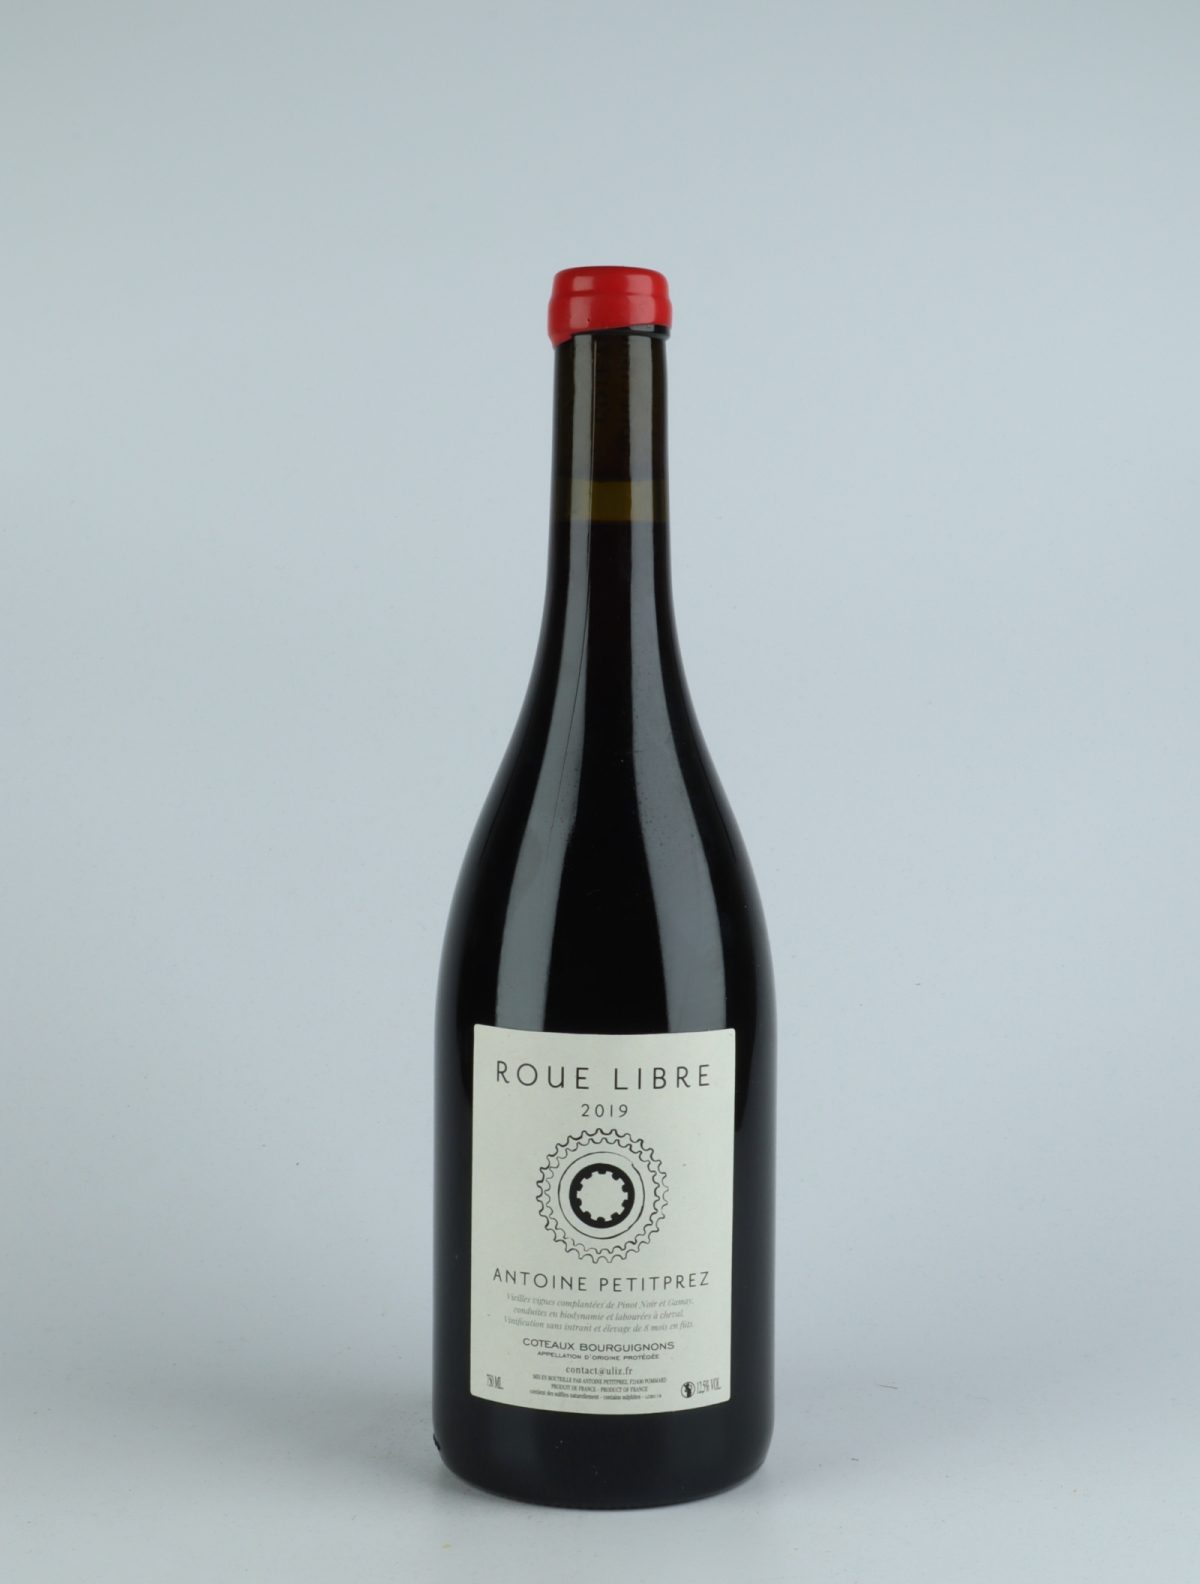 En flaske 2019 Coteaux Bourguignons - Roue Libre Rødvin fra Antoine Petitprez, Bourgogne i Frankrig